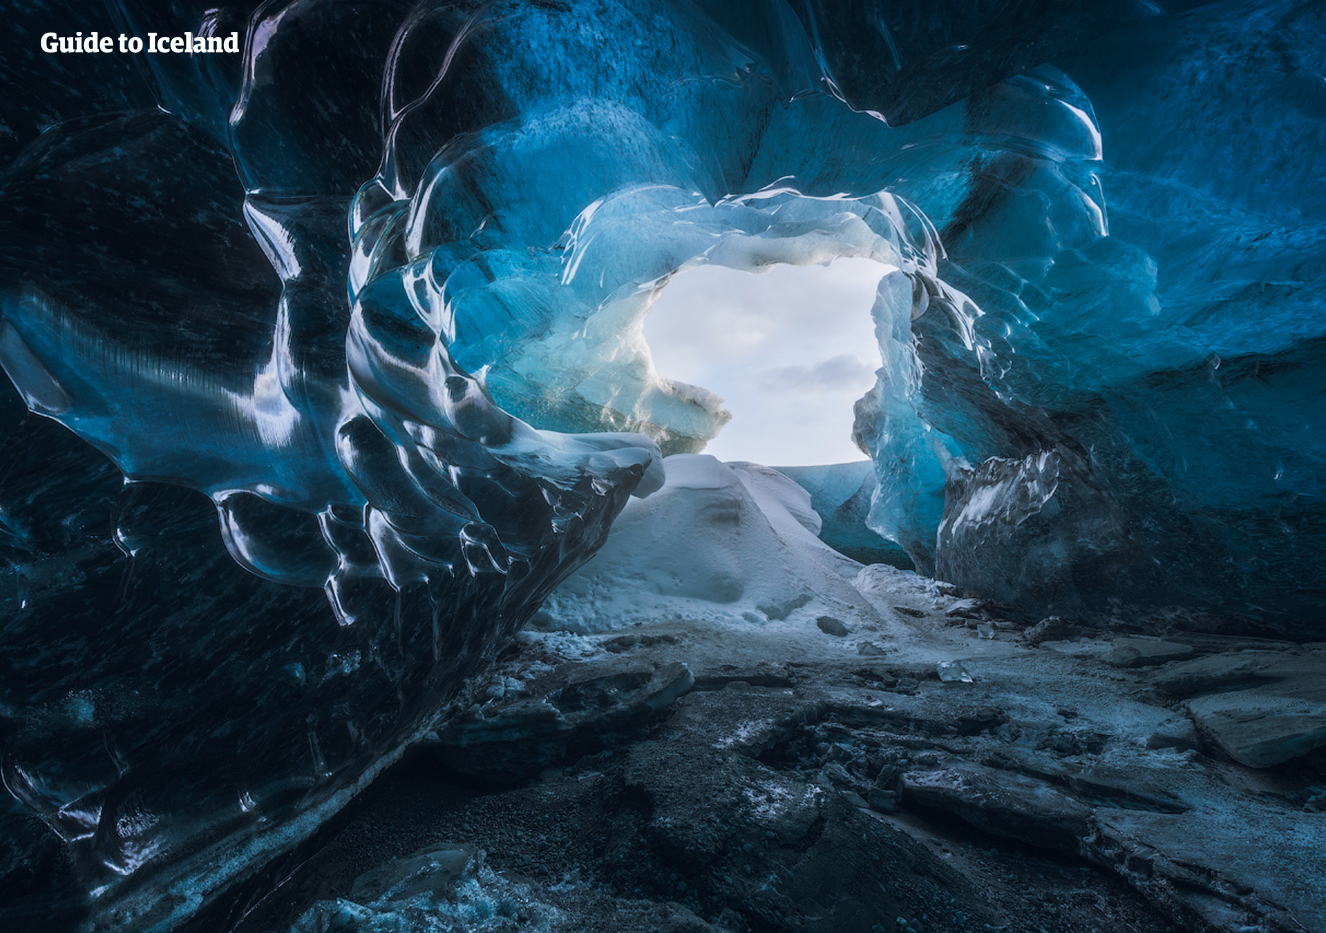 อุทยานแห่งชาติวัทนาโจกุลเป็นหนึ่งในสามอุทยานแห่งชาติของไอซ์แลนด์ (อีกสองแห่งคือทะเลสาบธารน้ำแข็งโจกุลซาลอน และเขตอนุรักษ์ธรรมชาติสกัฟตาเฟลล์) และในหน้าหนาวในอุทยานฯ วัทนาโจกุลมีถ้ำน้ำแข็งให้ชม